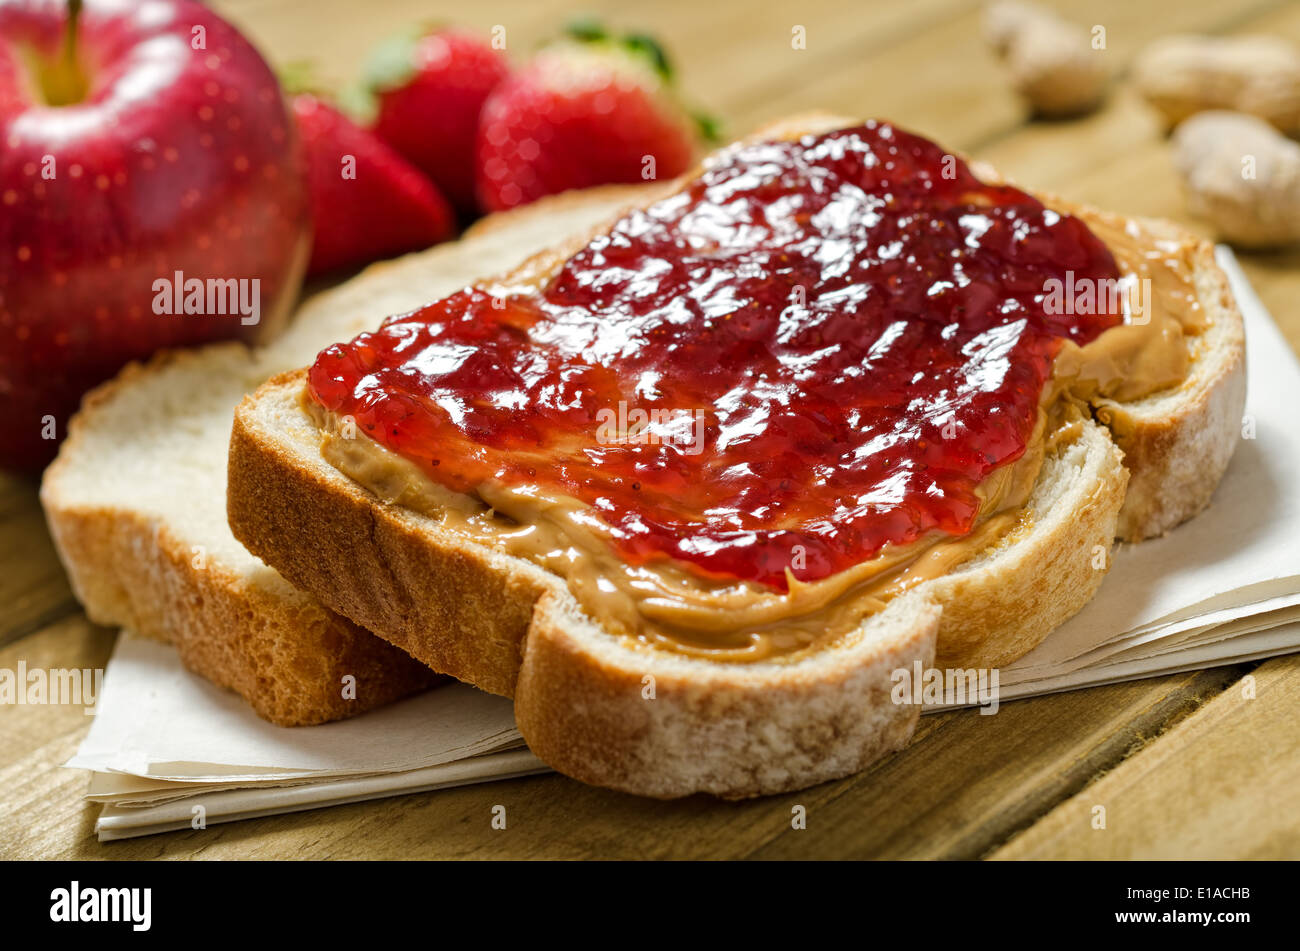 Un nutritivo sándwich de mantequilla de maní y mermelada con las manzanas, las fresas y los cacahuetes. Foto de stock